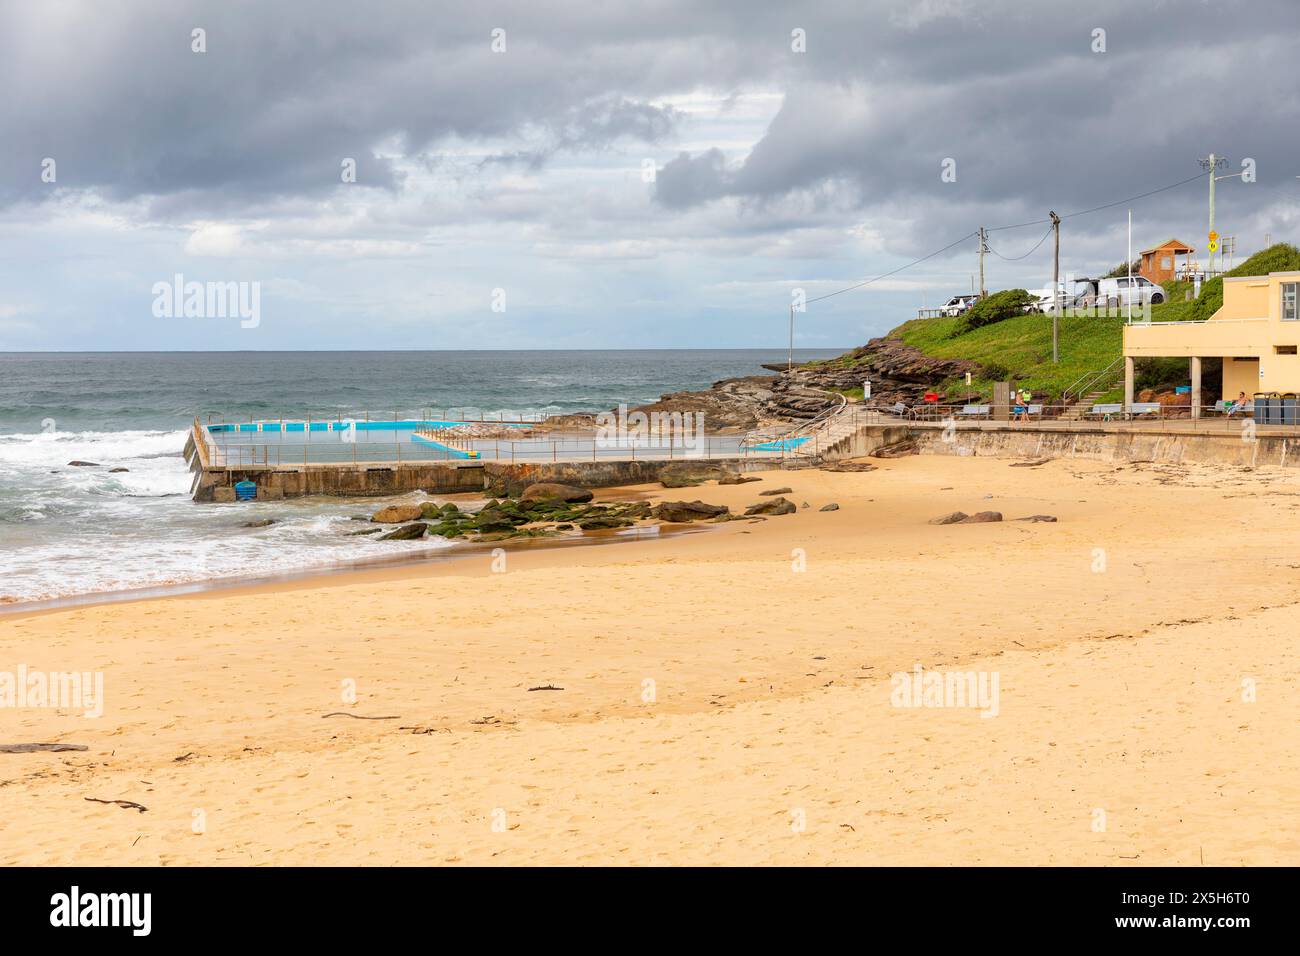 Ocean Rockpool, South Curl Beach Rockpool am stürmischen Herbsttag, sodass der Pool ruhig und leer ist, Sydney, NSW, Australien Stockfoto